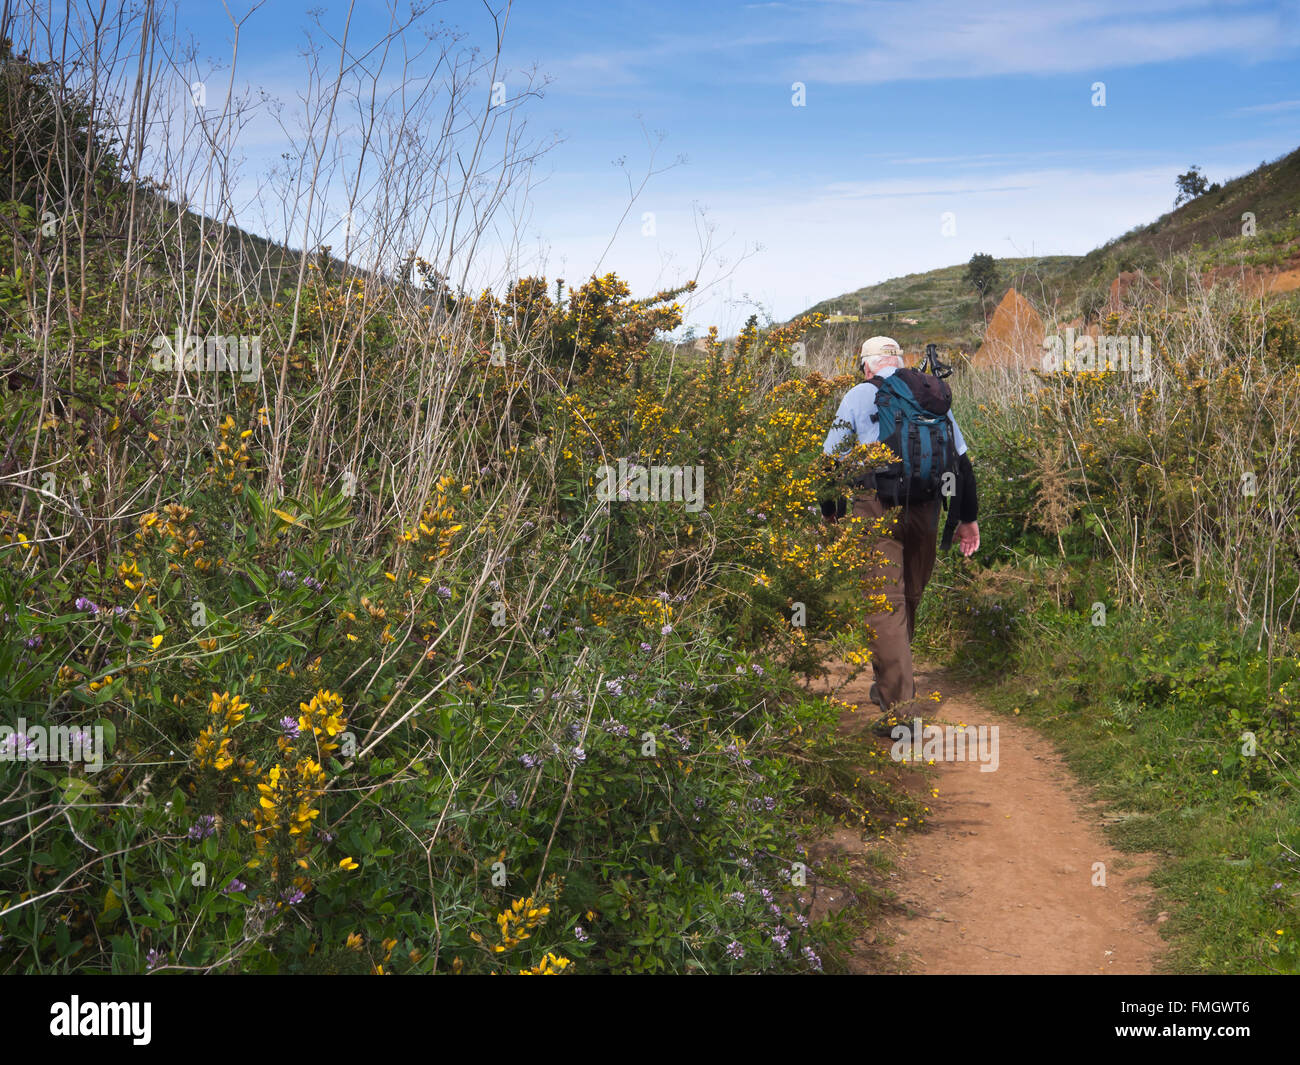 Sentier avec l'ajonc, pois d'Arabie et male hiker autour de 'Charcas del Erjos' Tenerife Espagne Banque D'Images